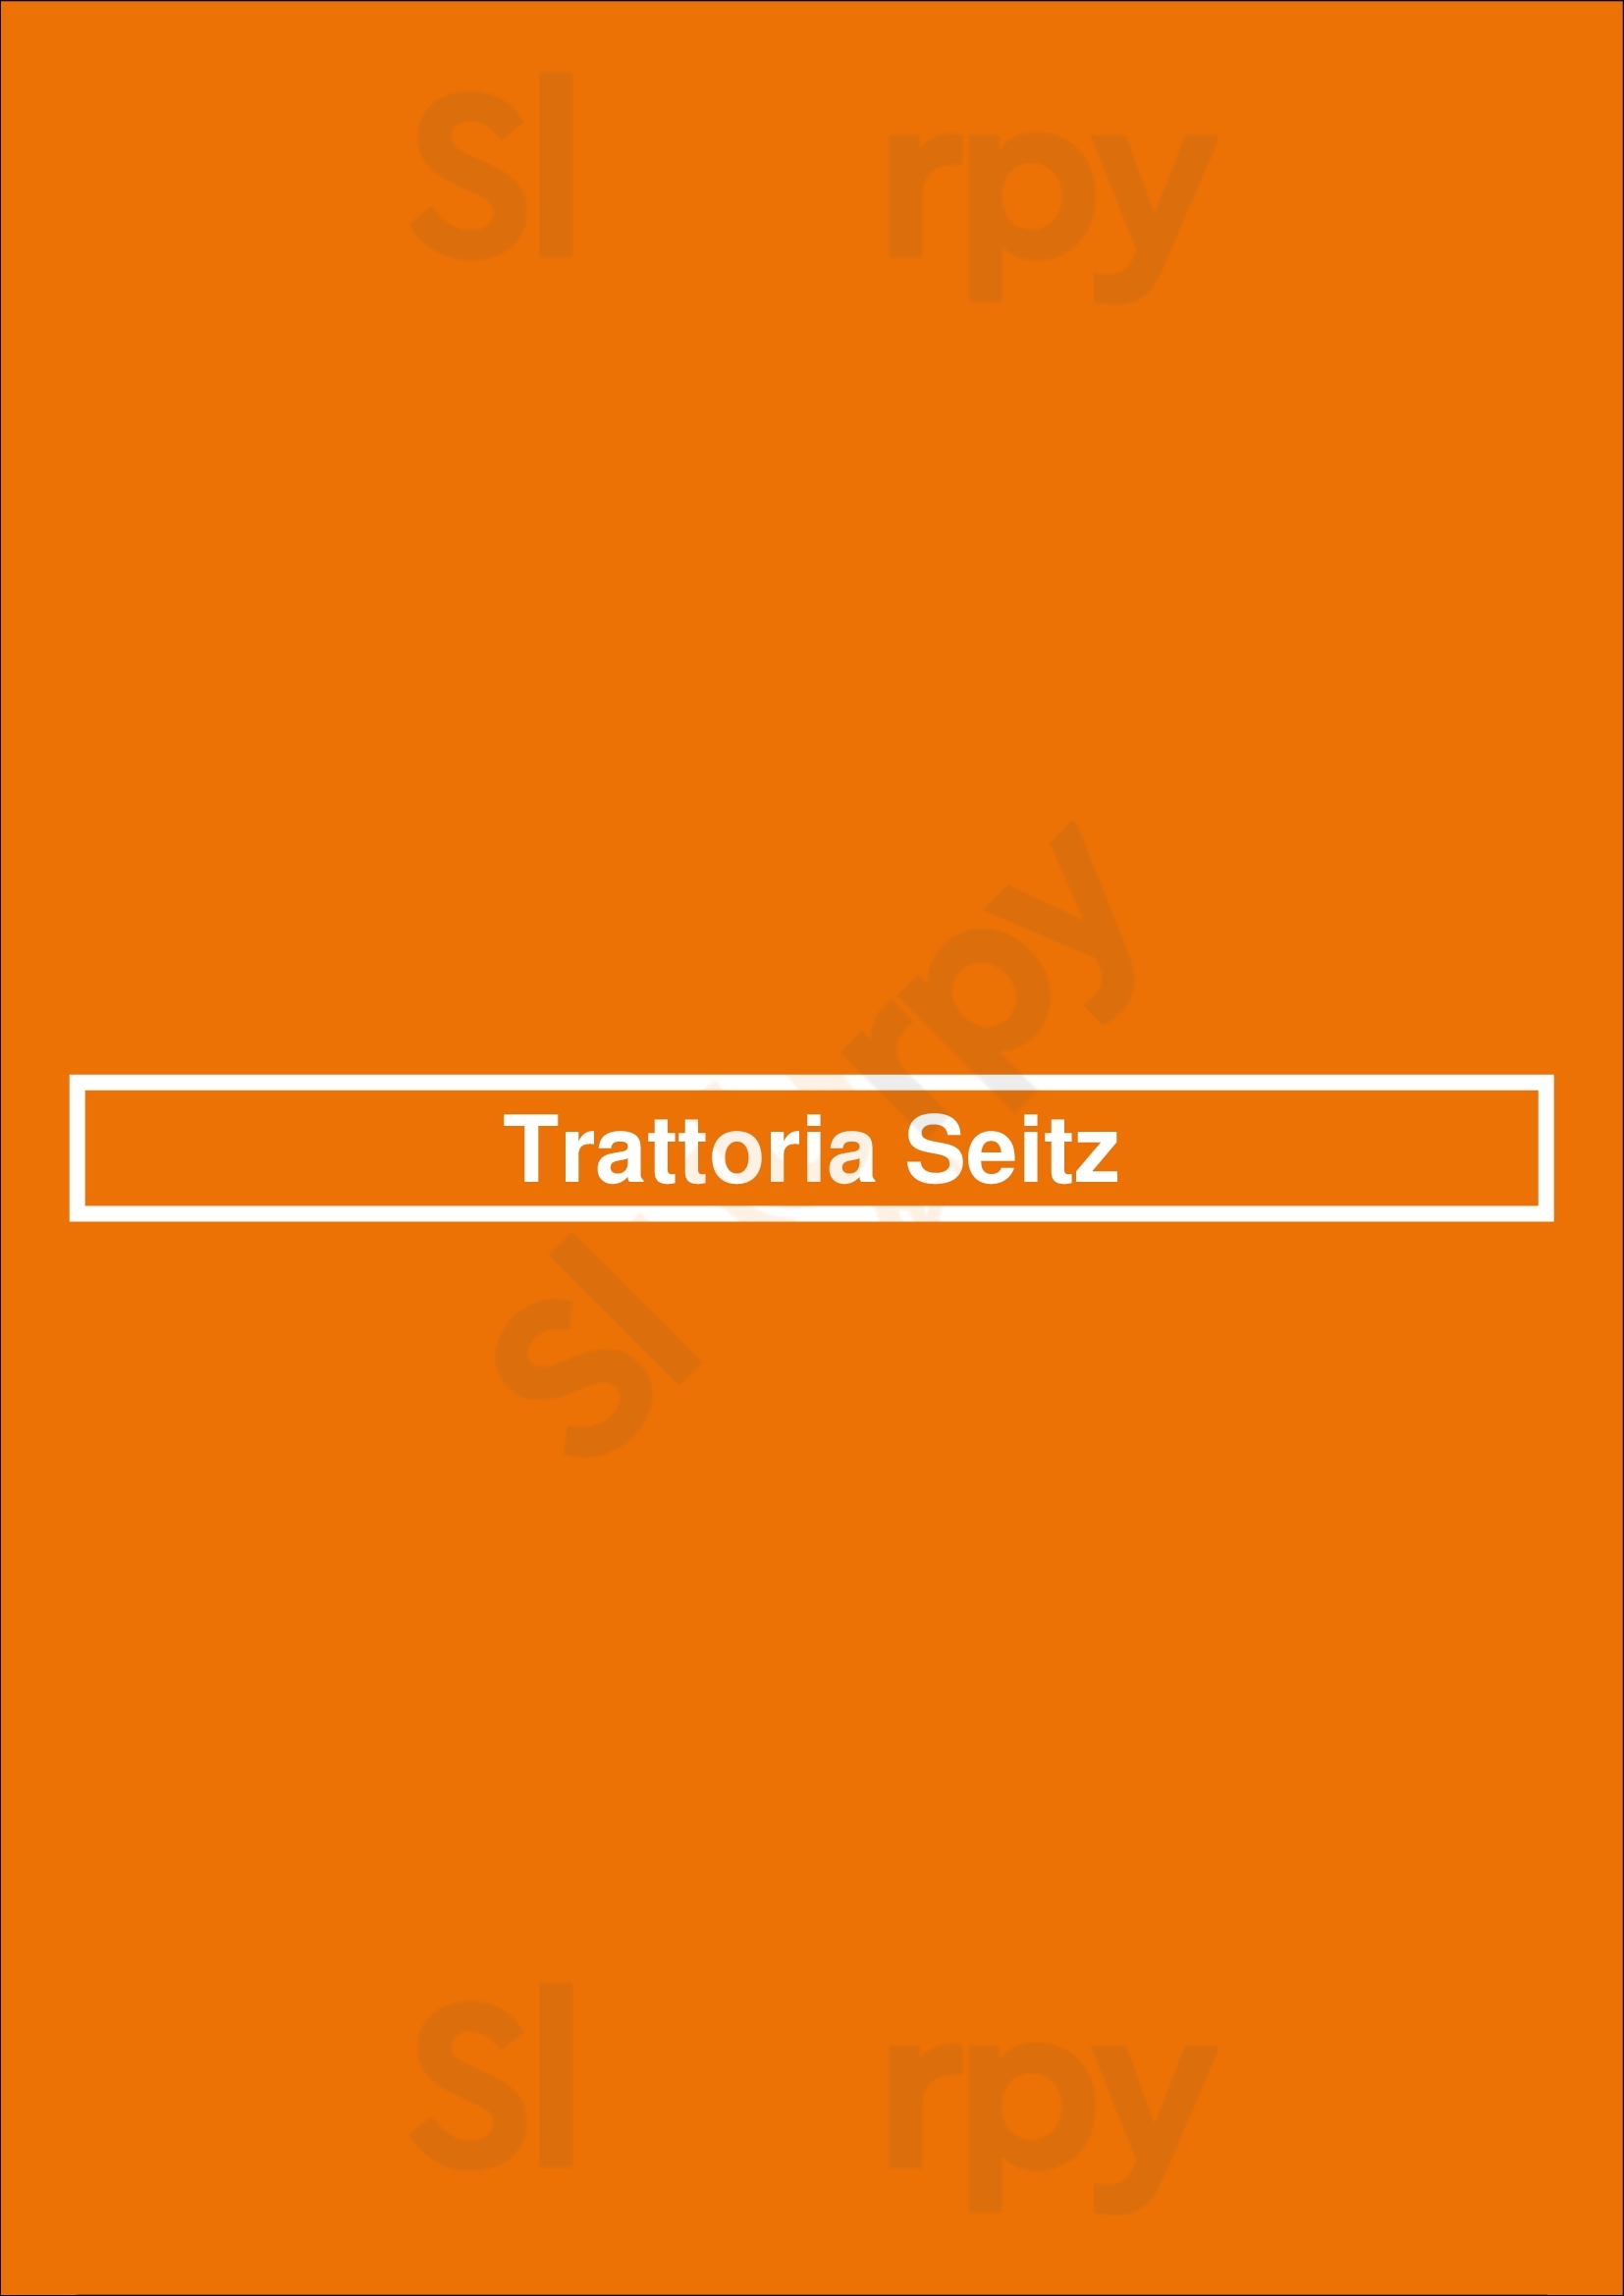 Trattoria Seitz München Menu - 1